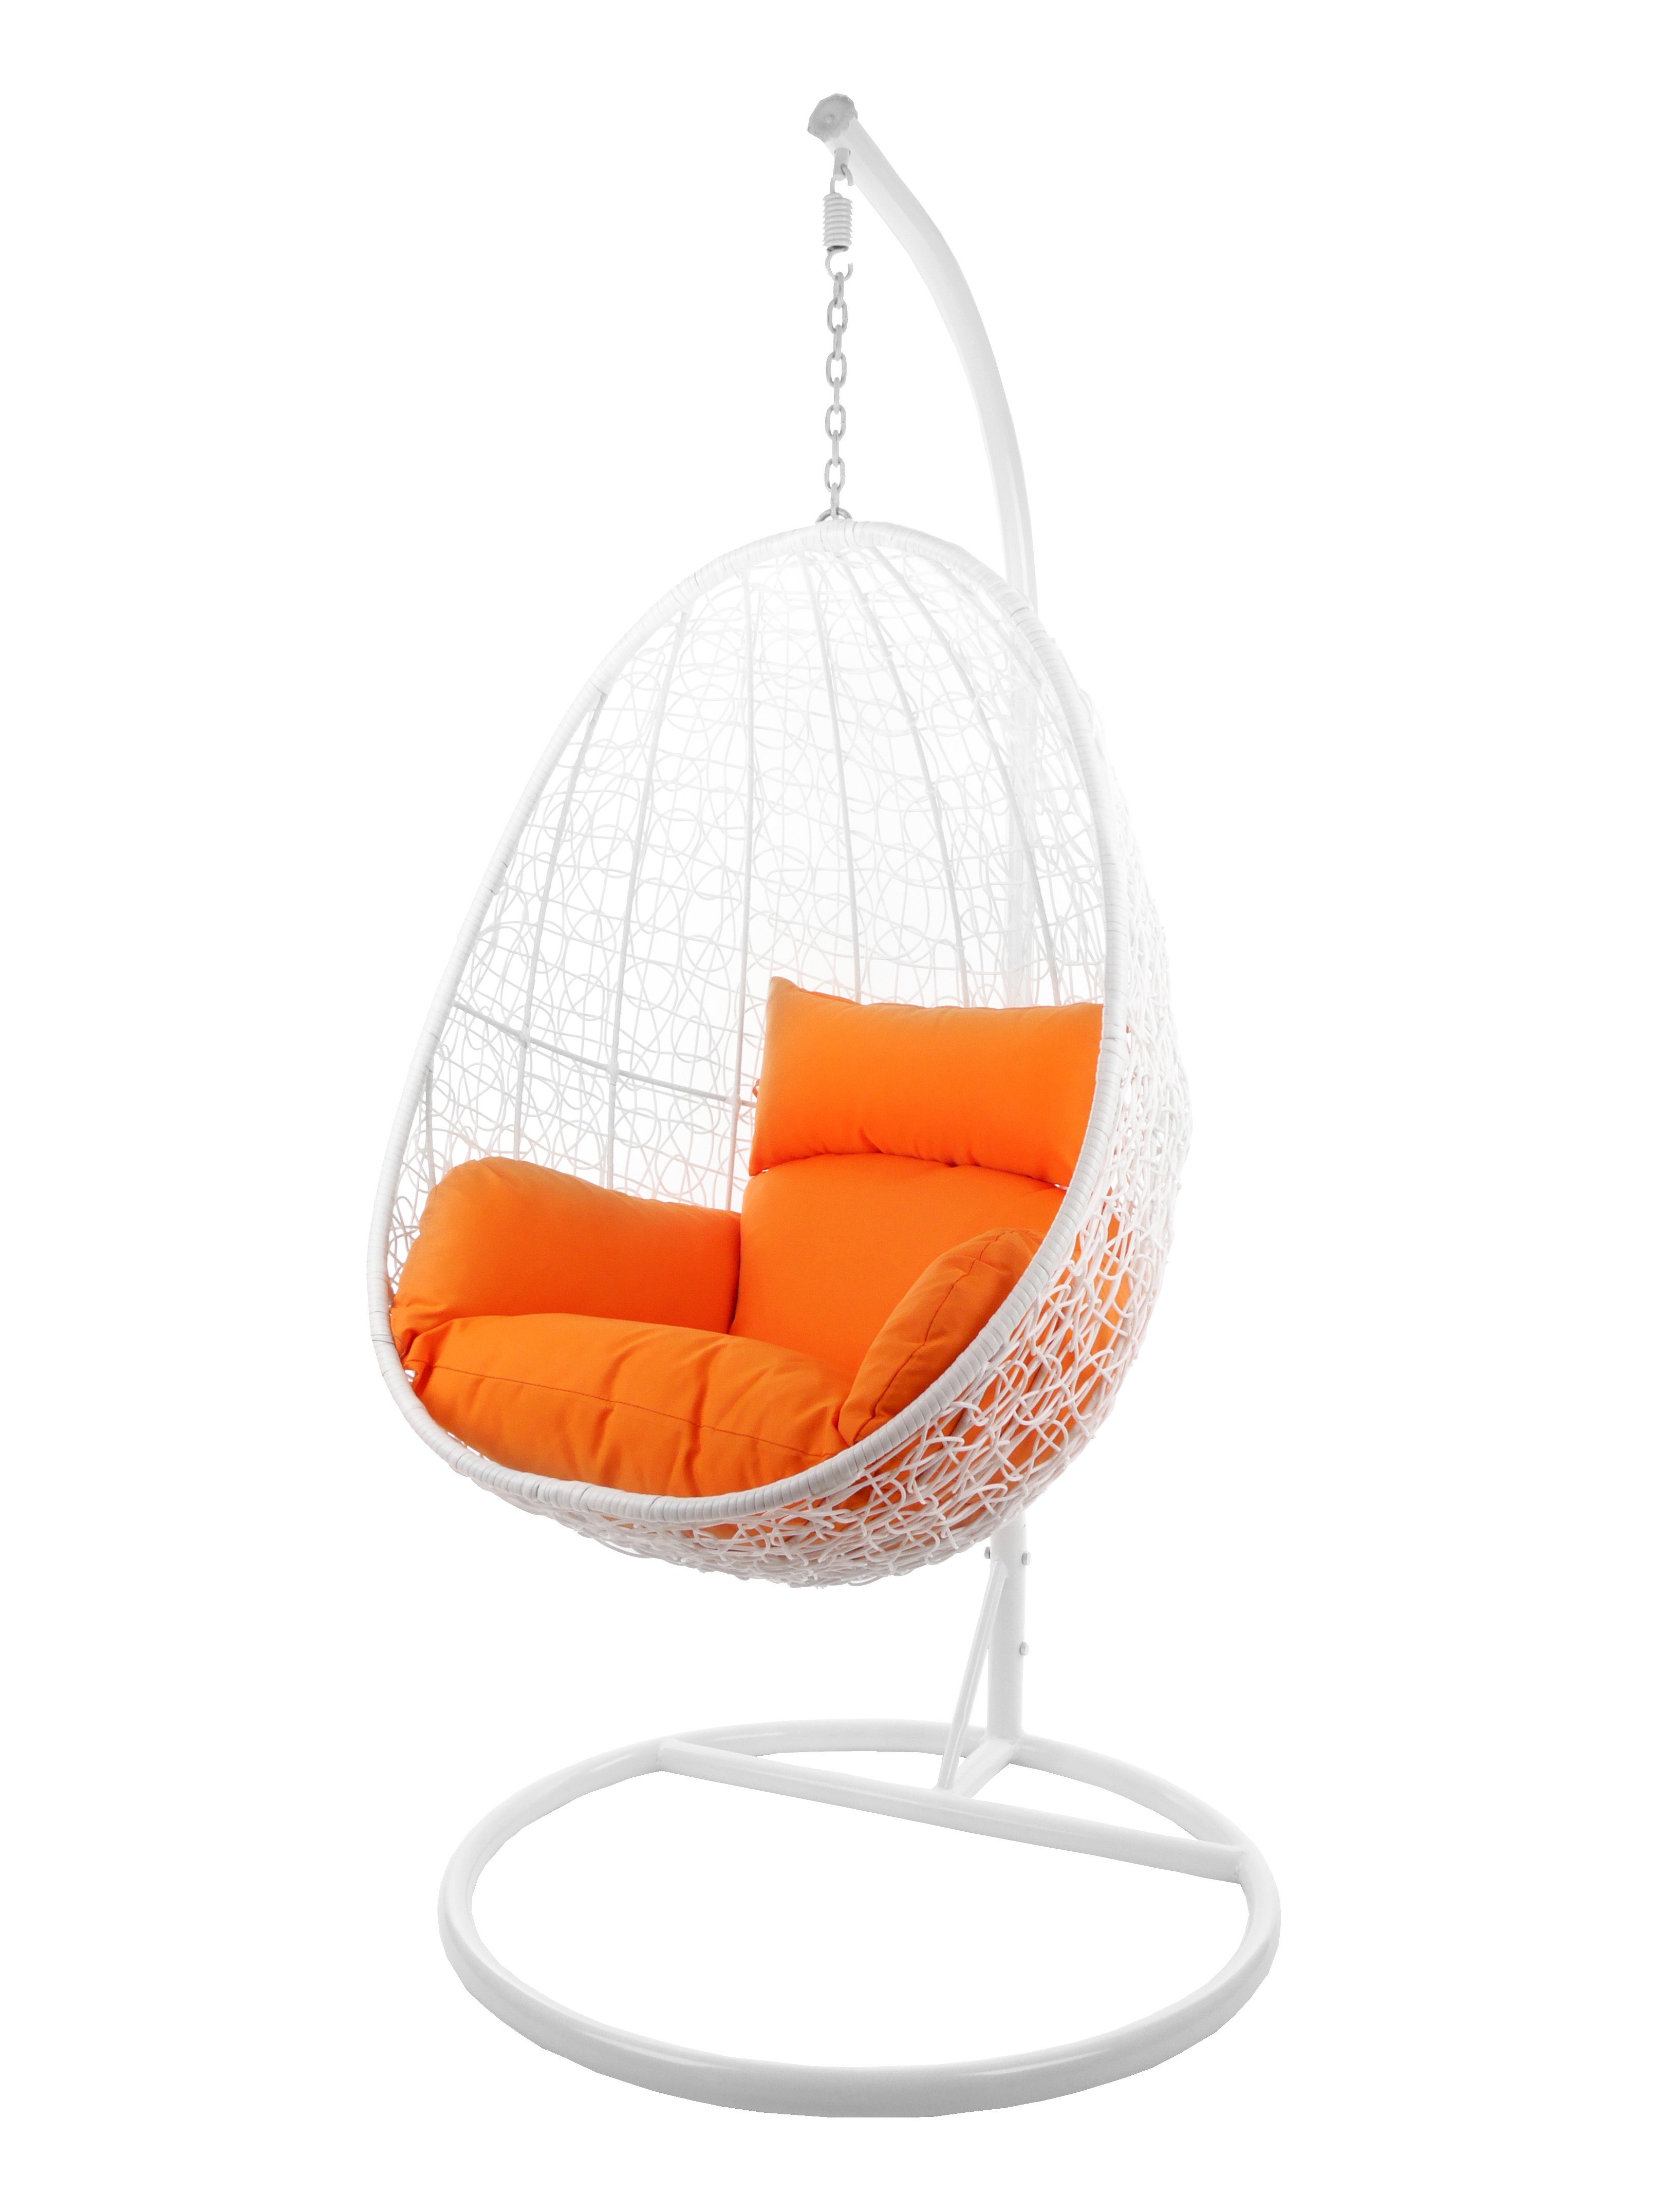 KIDEO Hängesessel Hängesessel CAPDEPERA weiß, Swing Chair mit Gestell und Kissen, Loungesessel, Hängesessel weiß orange (3030 tangerine)